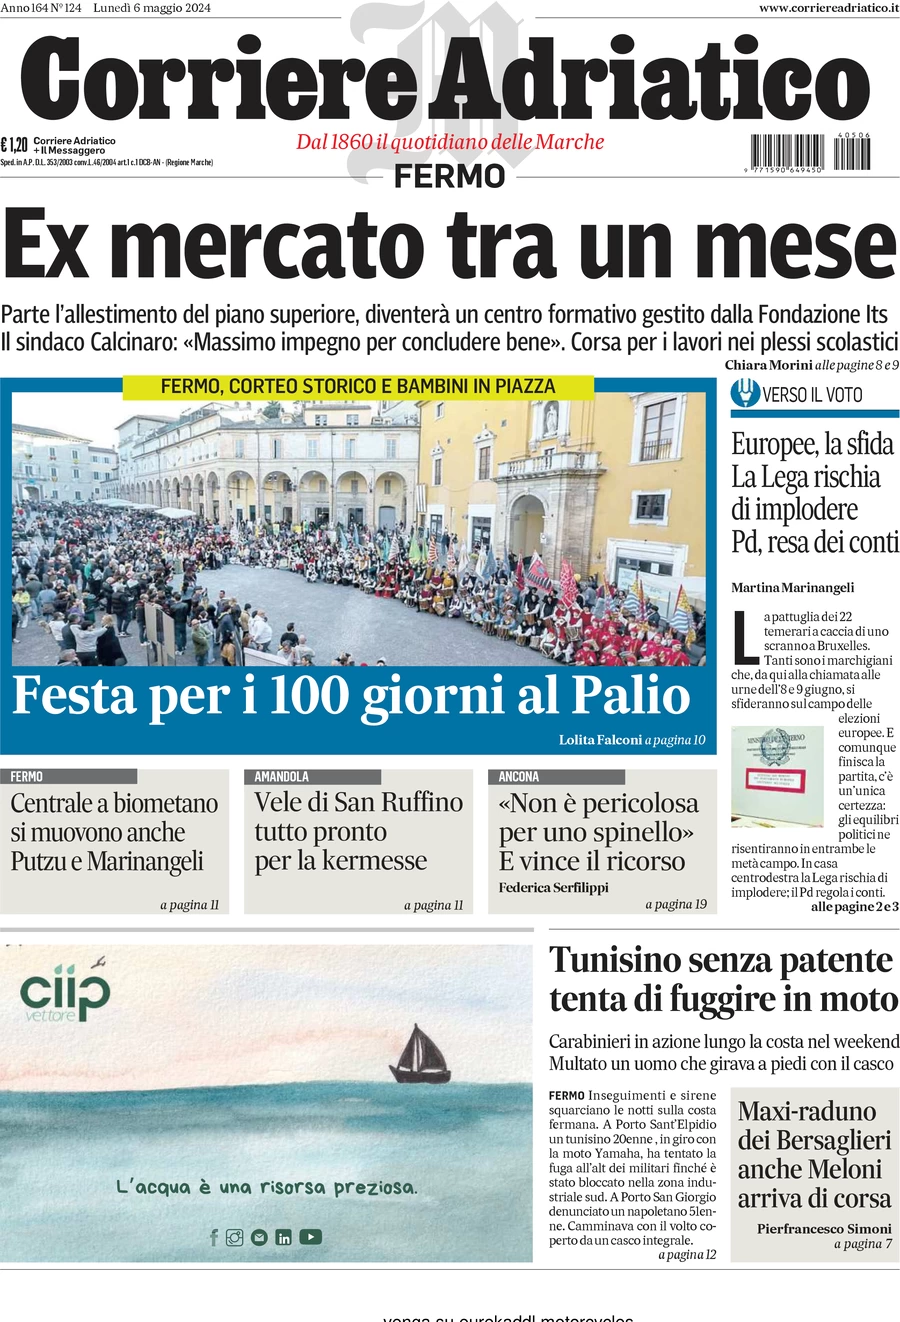 anteprima della prima pagina di Corriere Adriatico (Fermo)